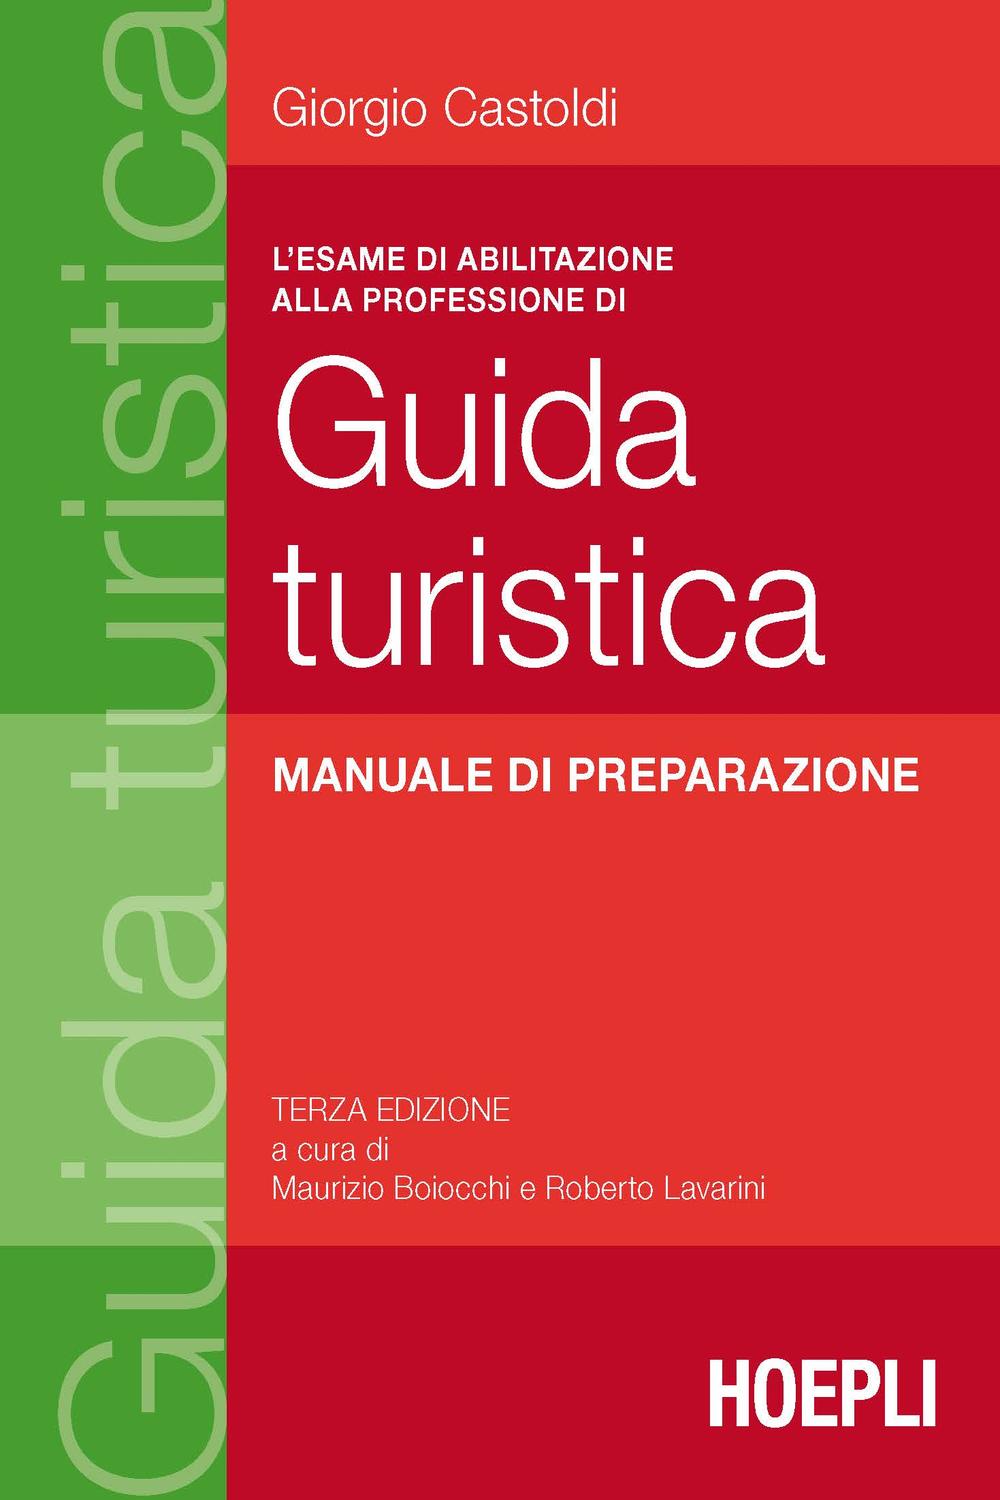 L'esame di abilitazione alla professione di guida turistica - Giorgio Castoldi, Maurizio Boiocchi, Roberto Lavarini